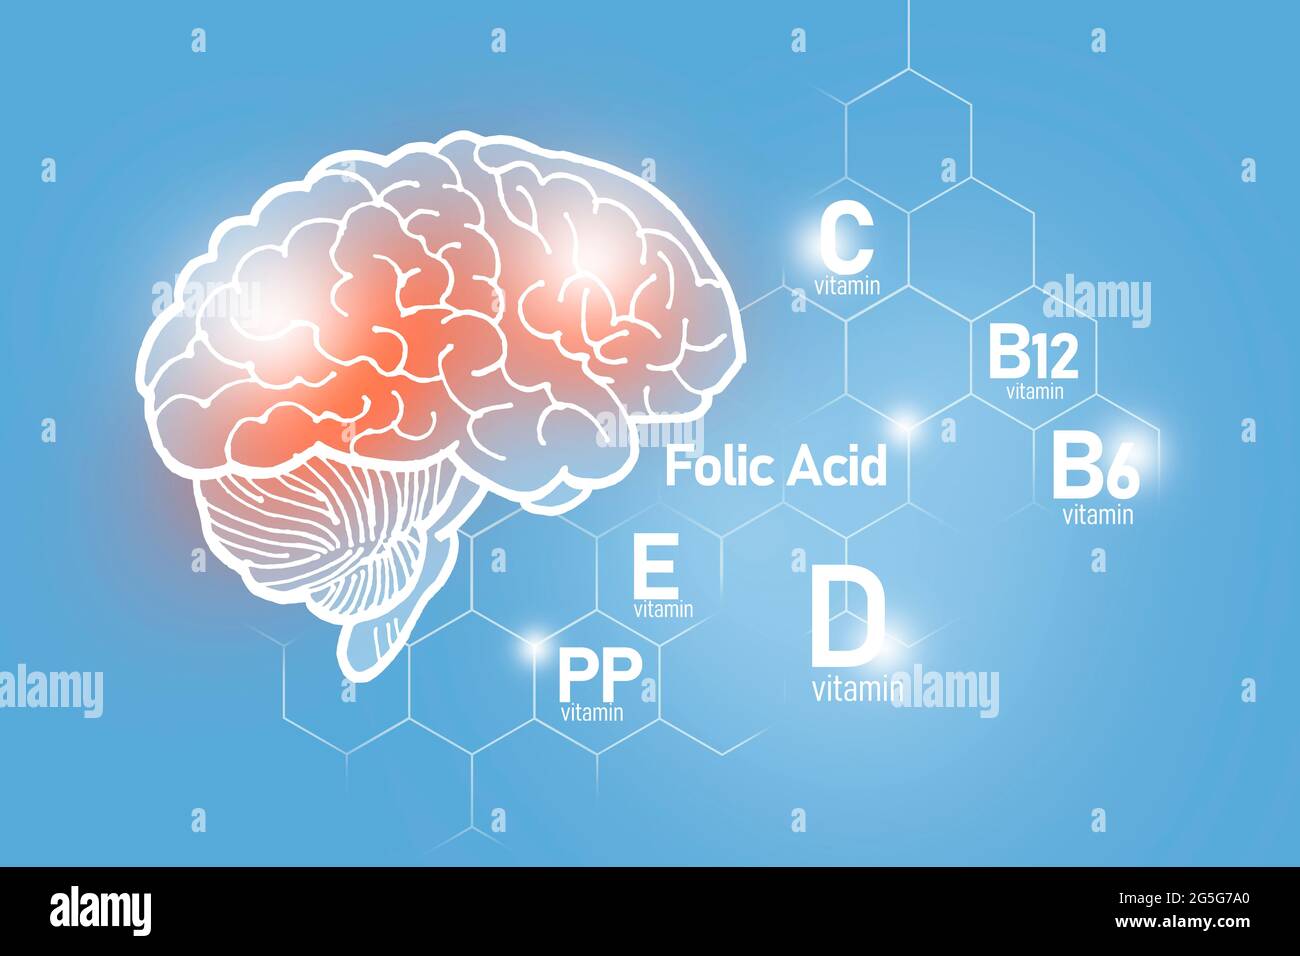 Essentielle Nährstoffe für die Gesundheit des Gehirns, einschließlich Vitamin C, Vitamin B, Folsäure, Vitamin PP. Design-Set der wichtigsten menschlichen Organe auf blauem Hintergrund Stockfoto